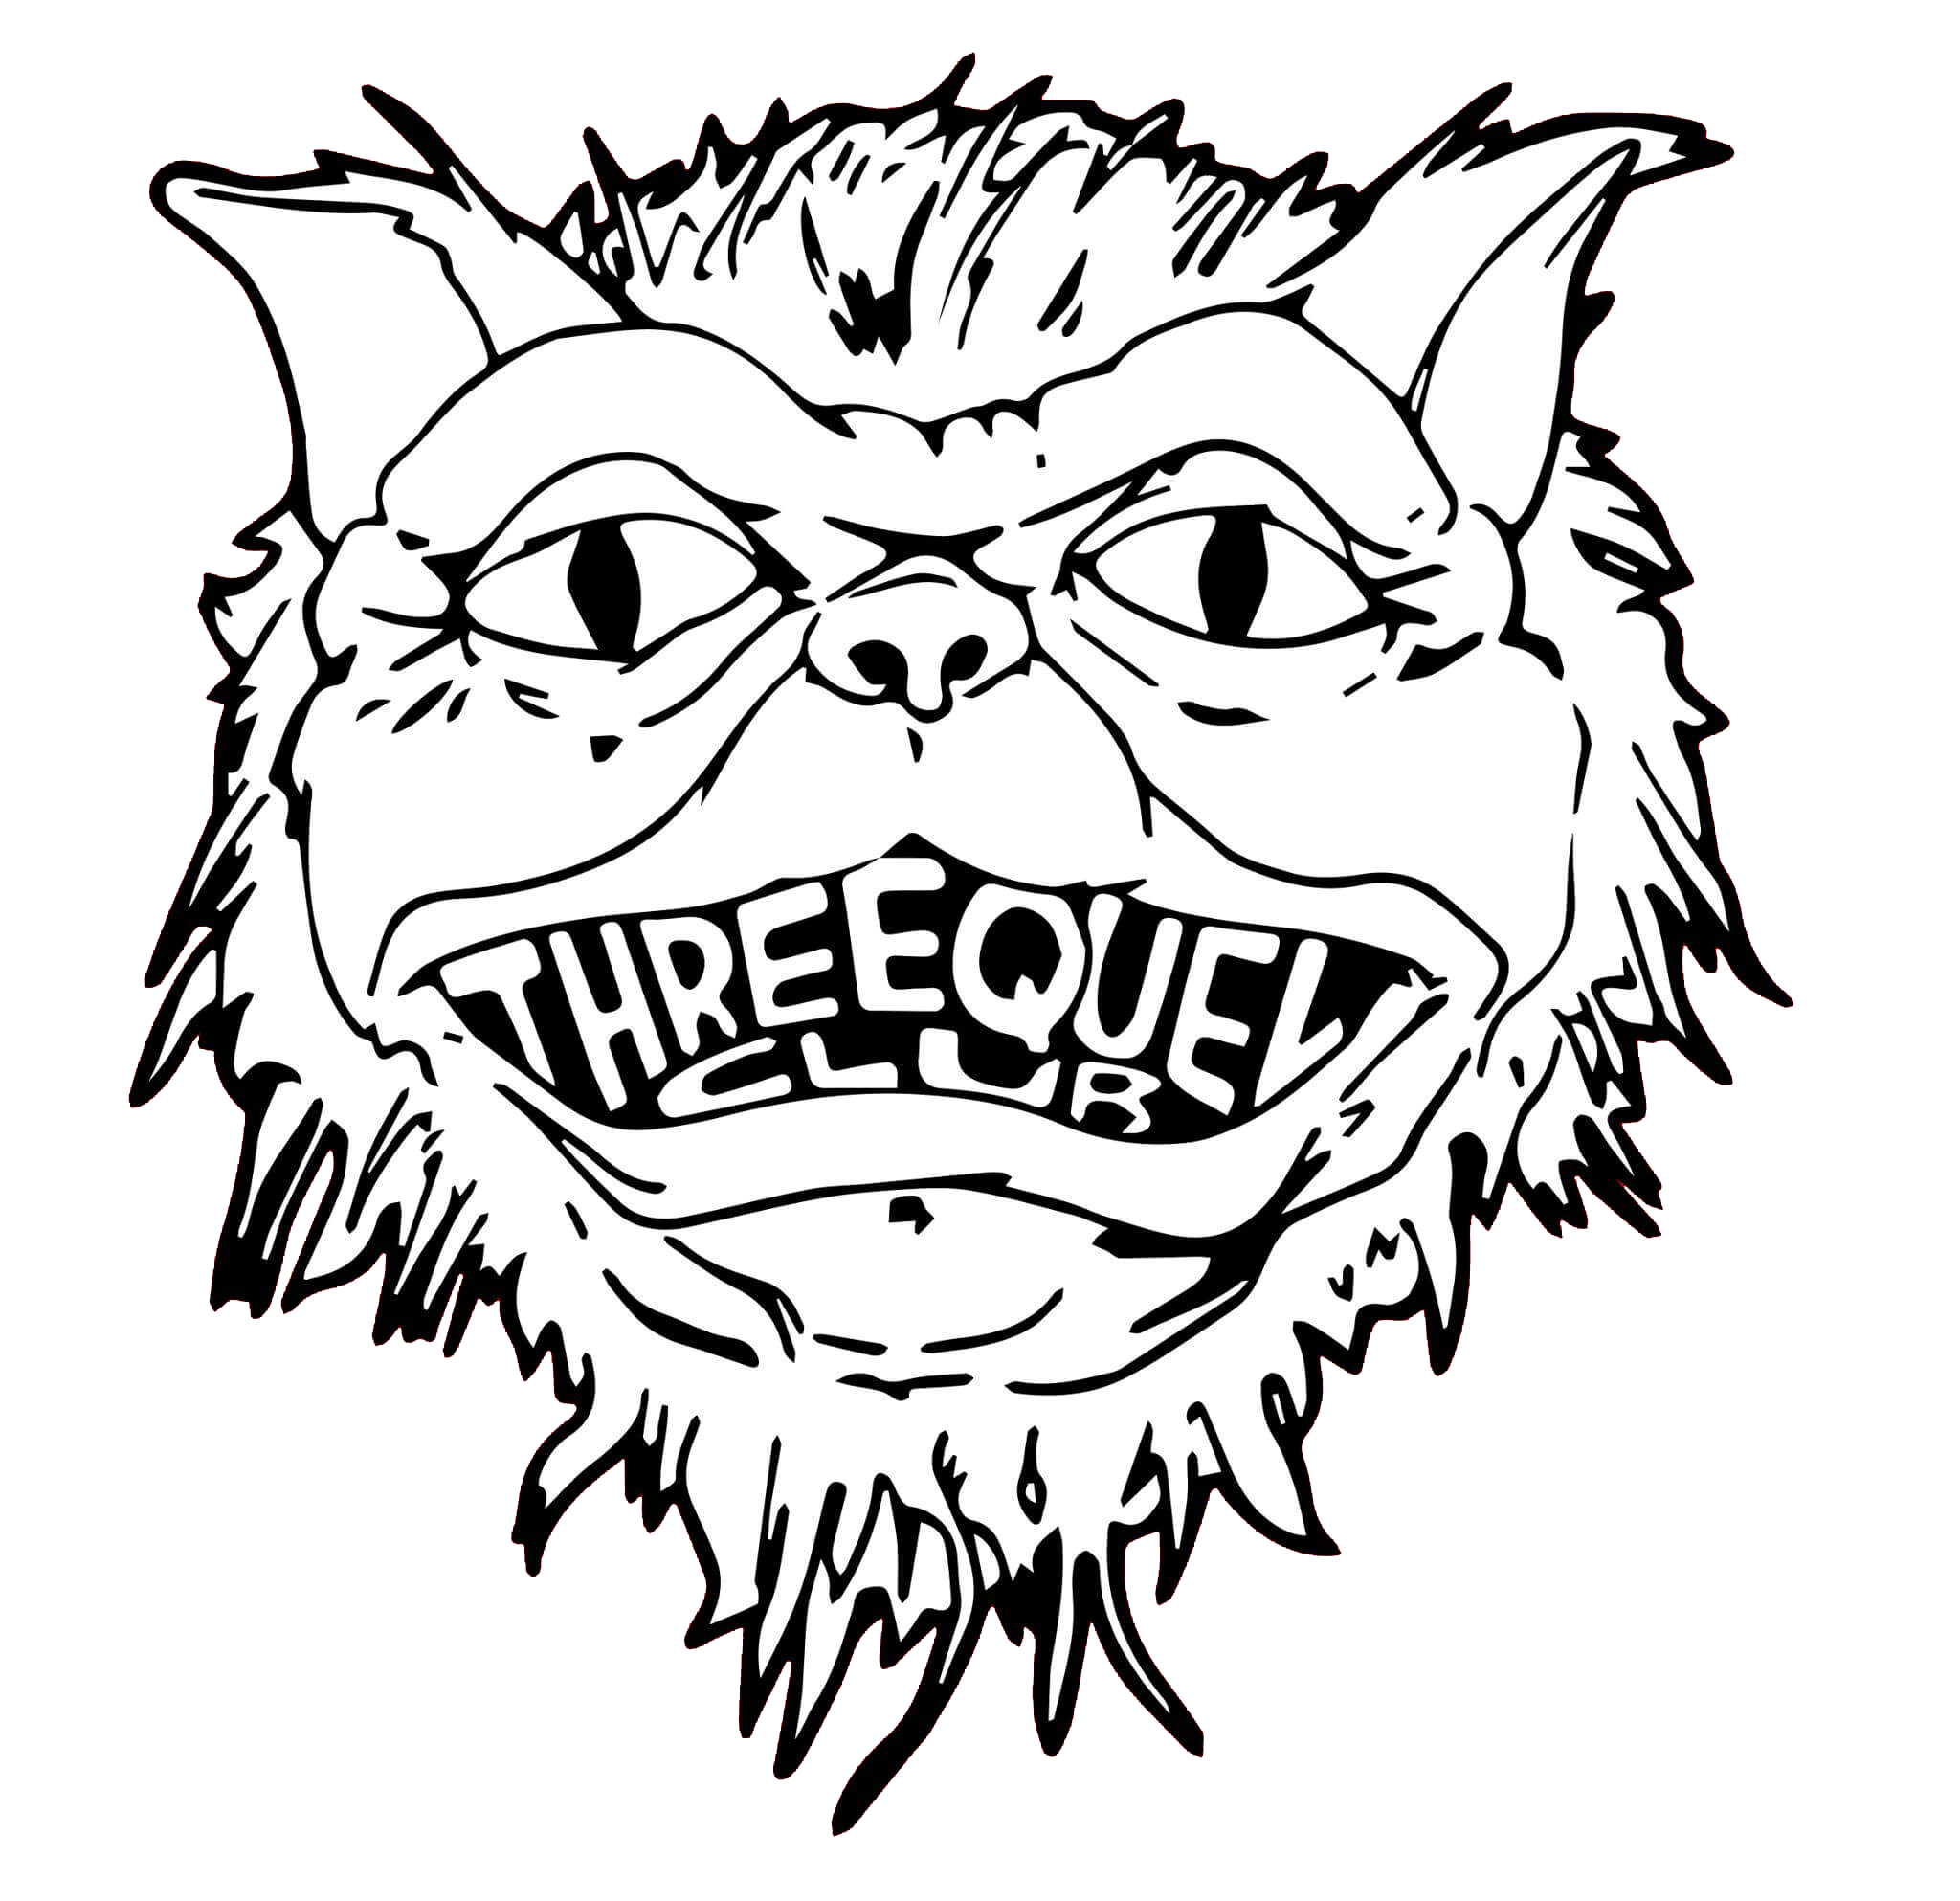 Threequel Club